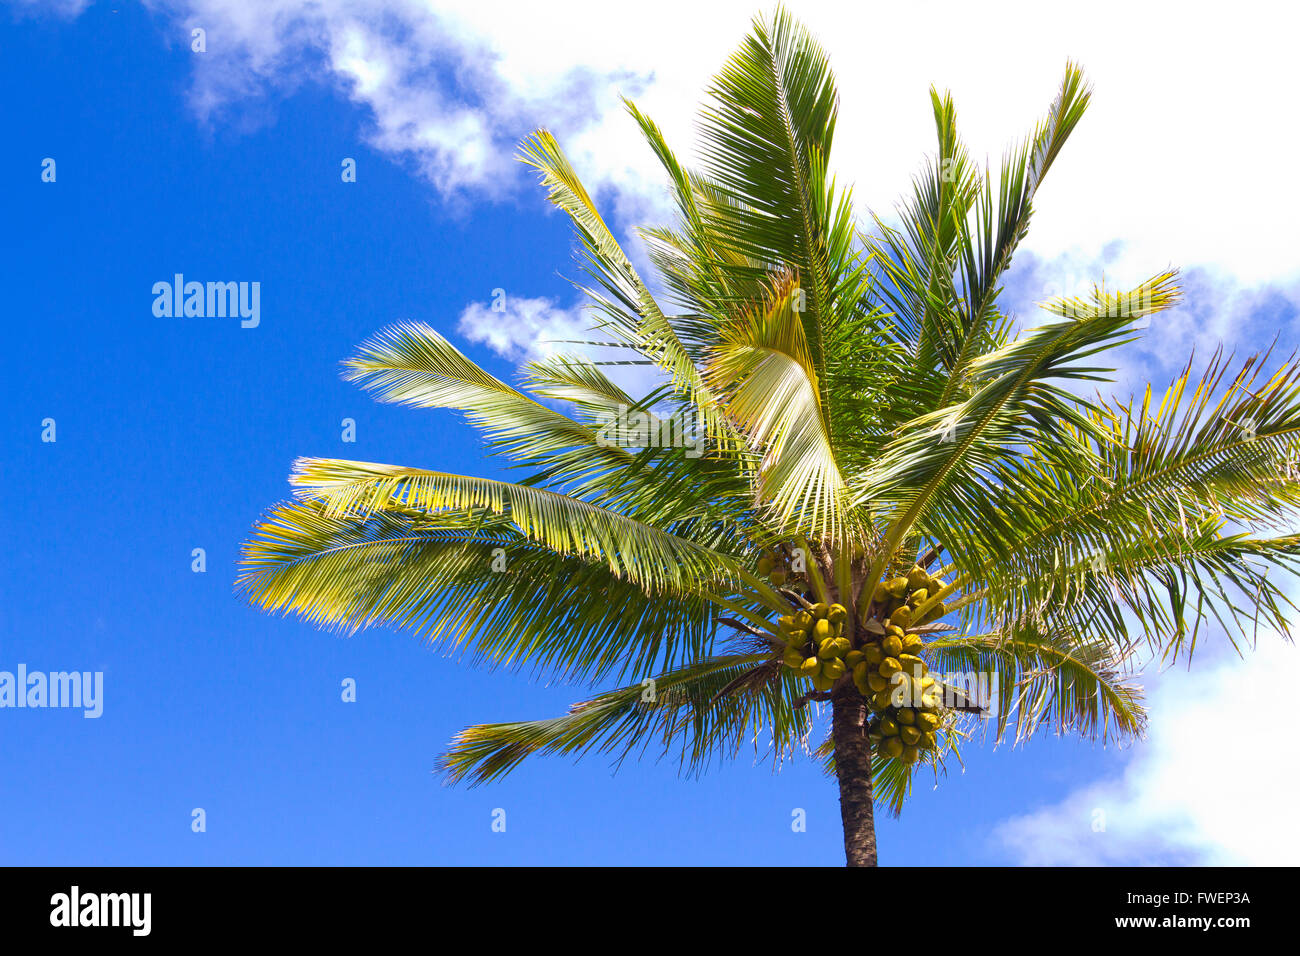 Queste noci di cocco sono rip e pronti per essere raccolti in una alta palma nelle Hawaii. Foto Stock